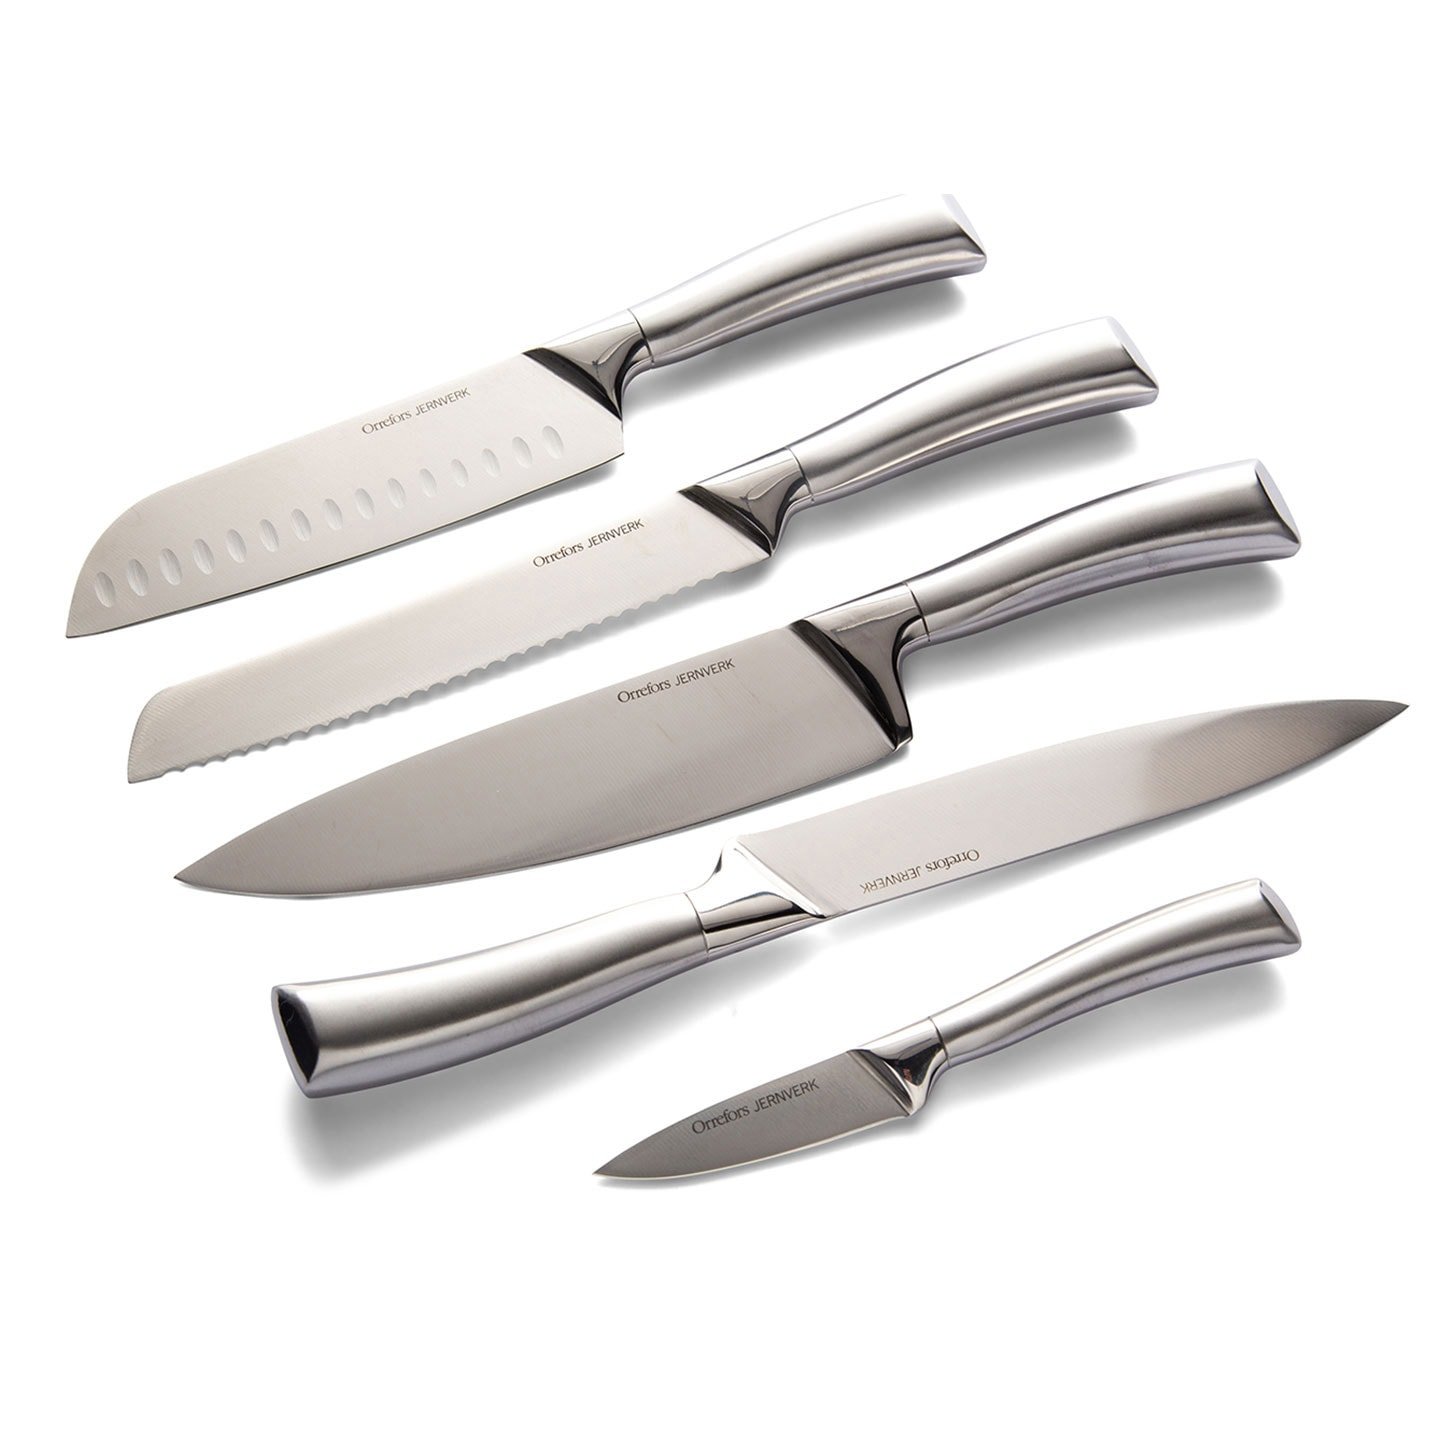 Orrefors Jernverk knivsett i stål 5-pack (1 av 7)